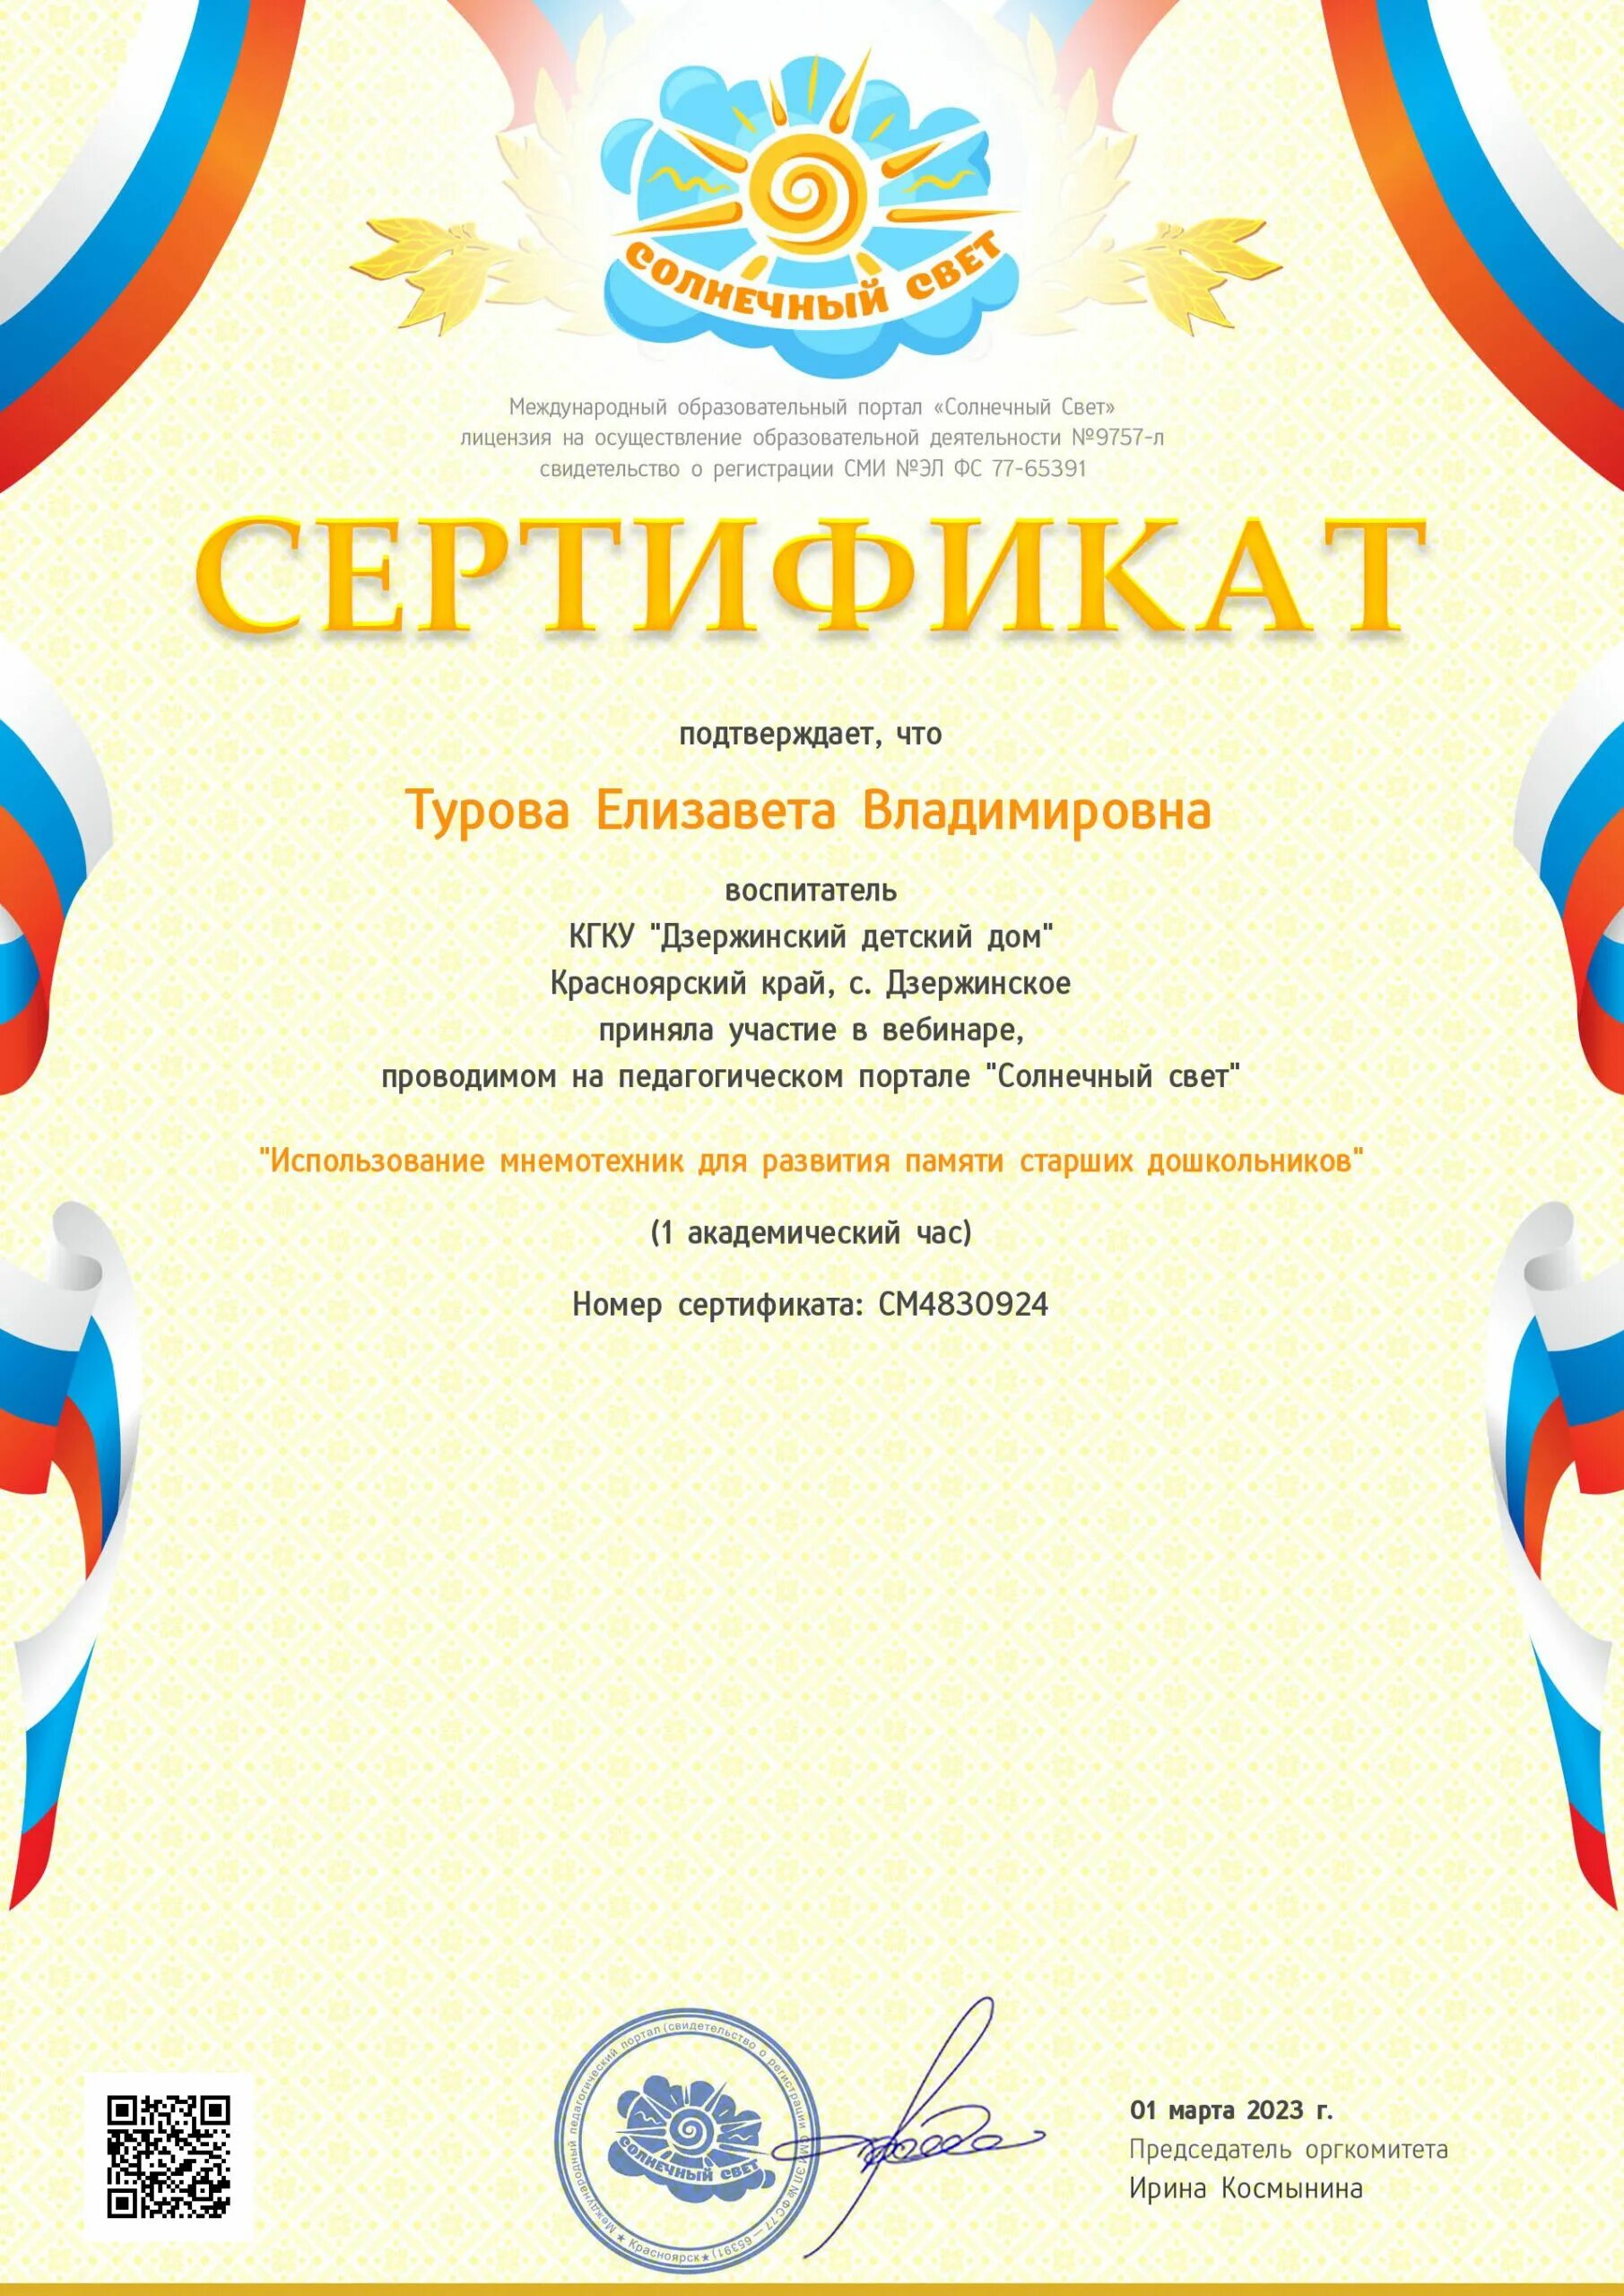 Сайт солнечный свет конкурсы. Сертификат Солнечный свет.